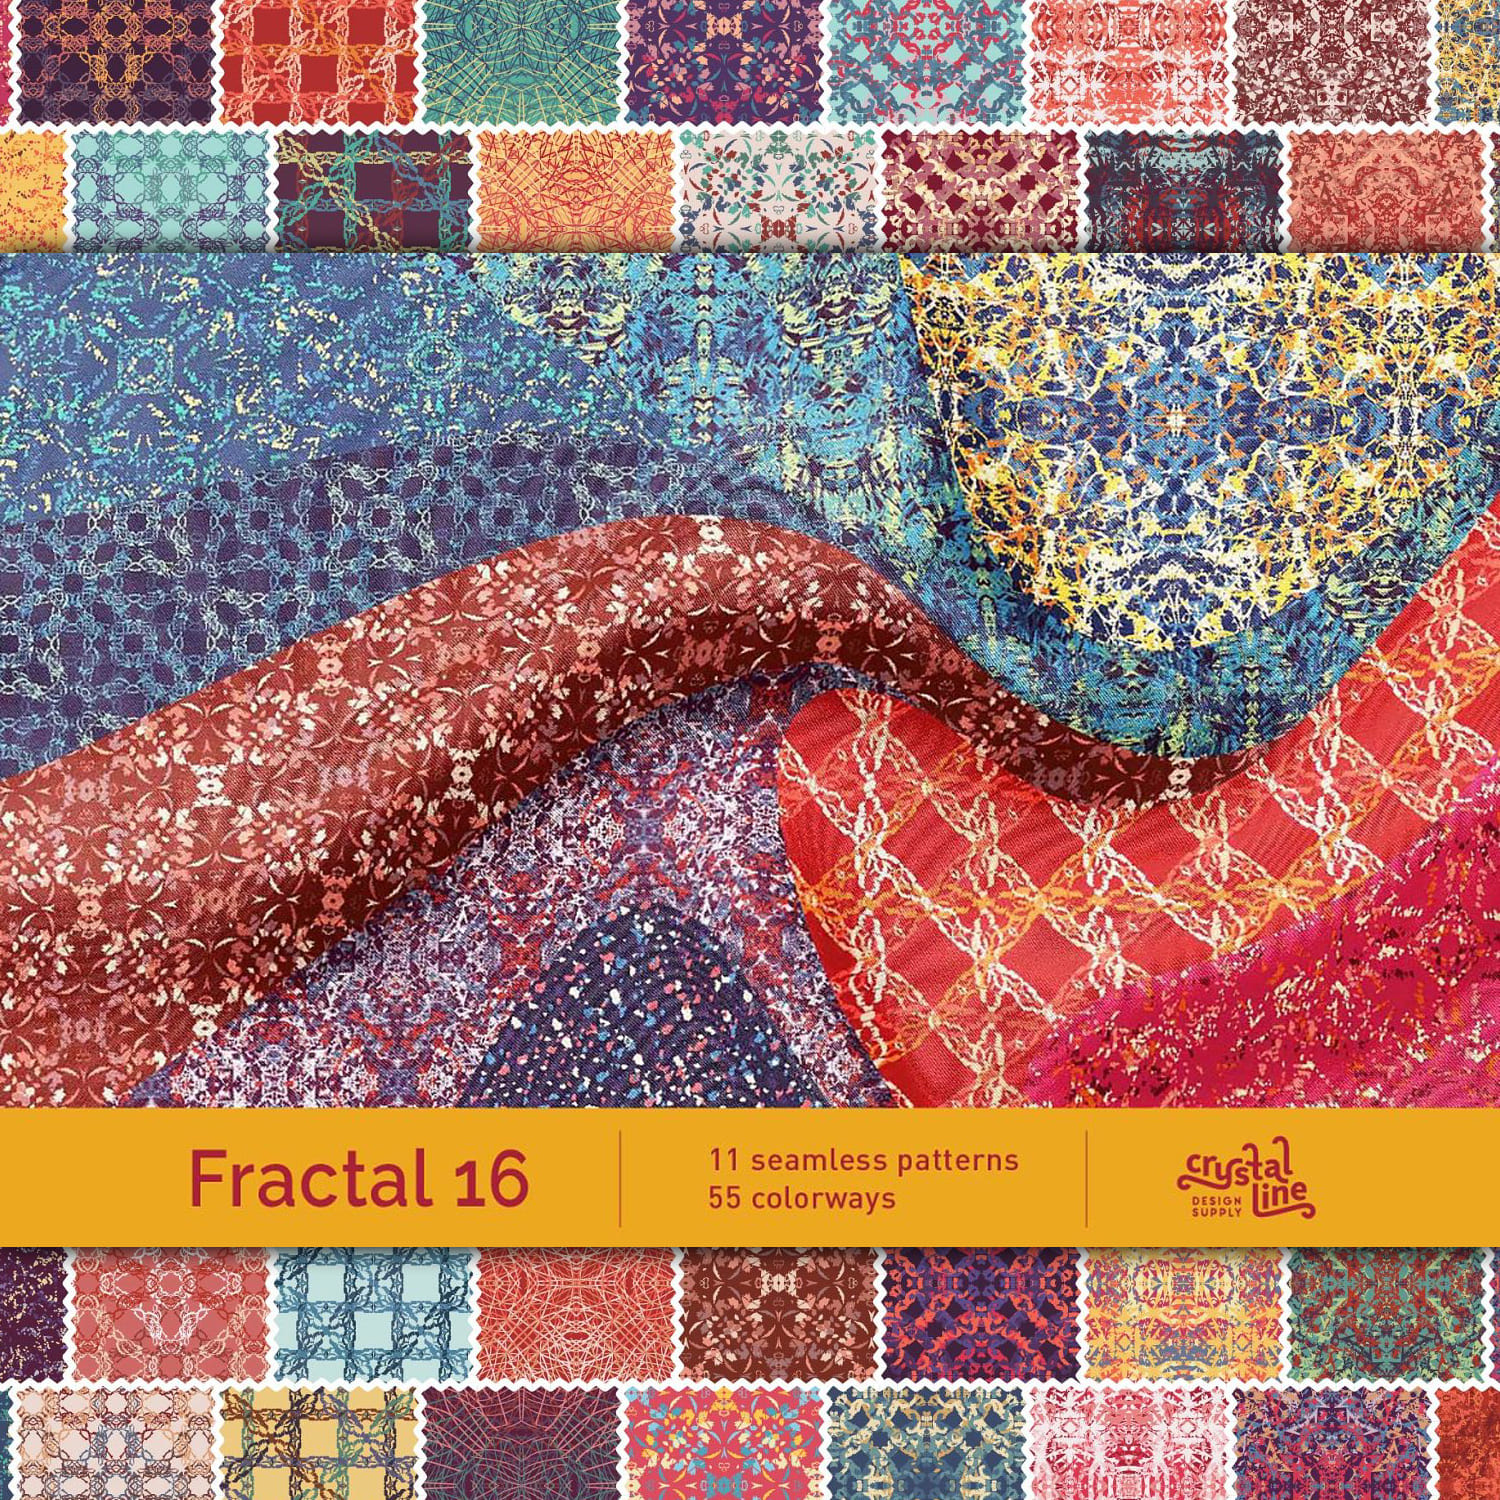 Fractal Patterns 16 cover image.